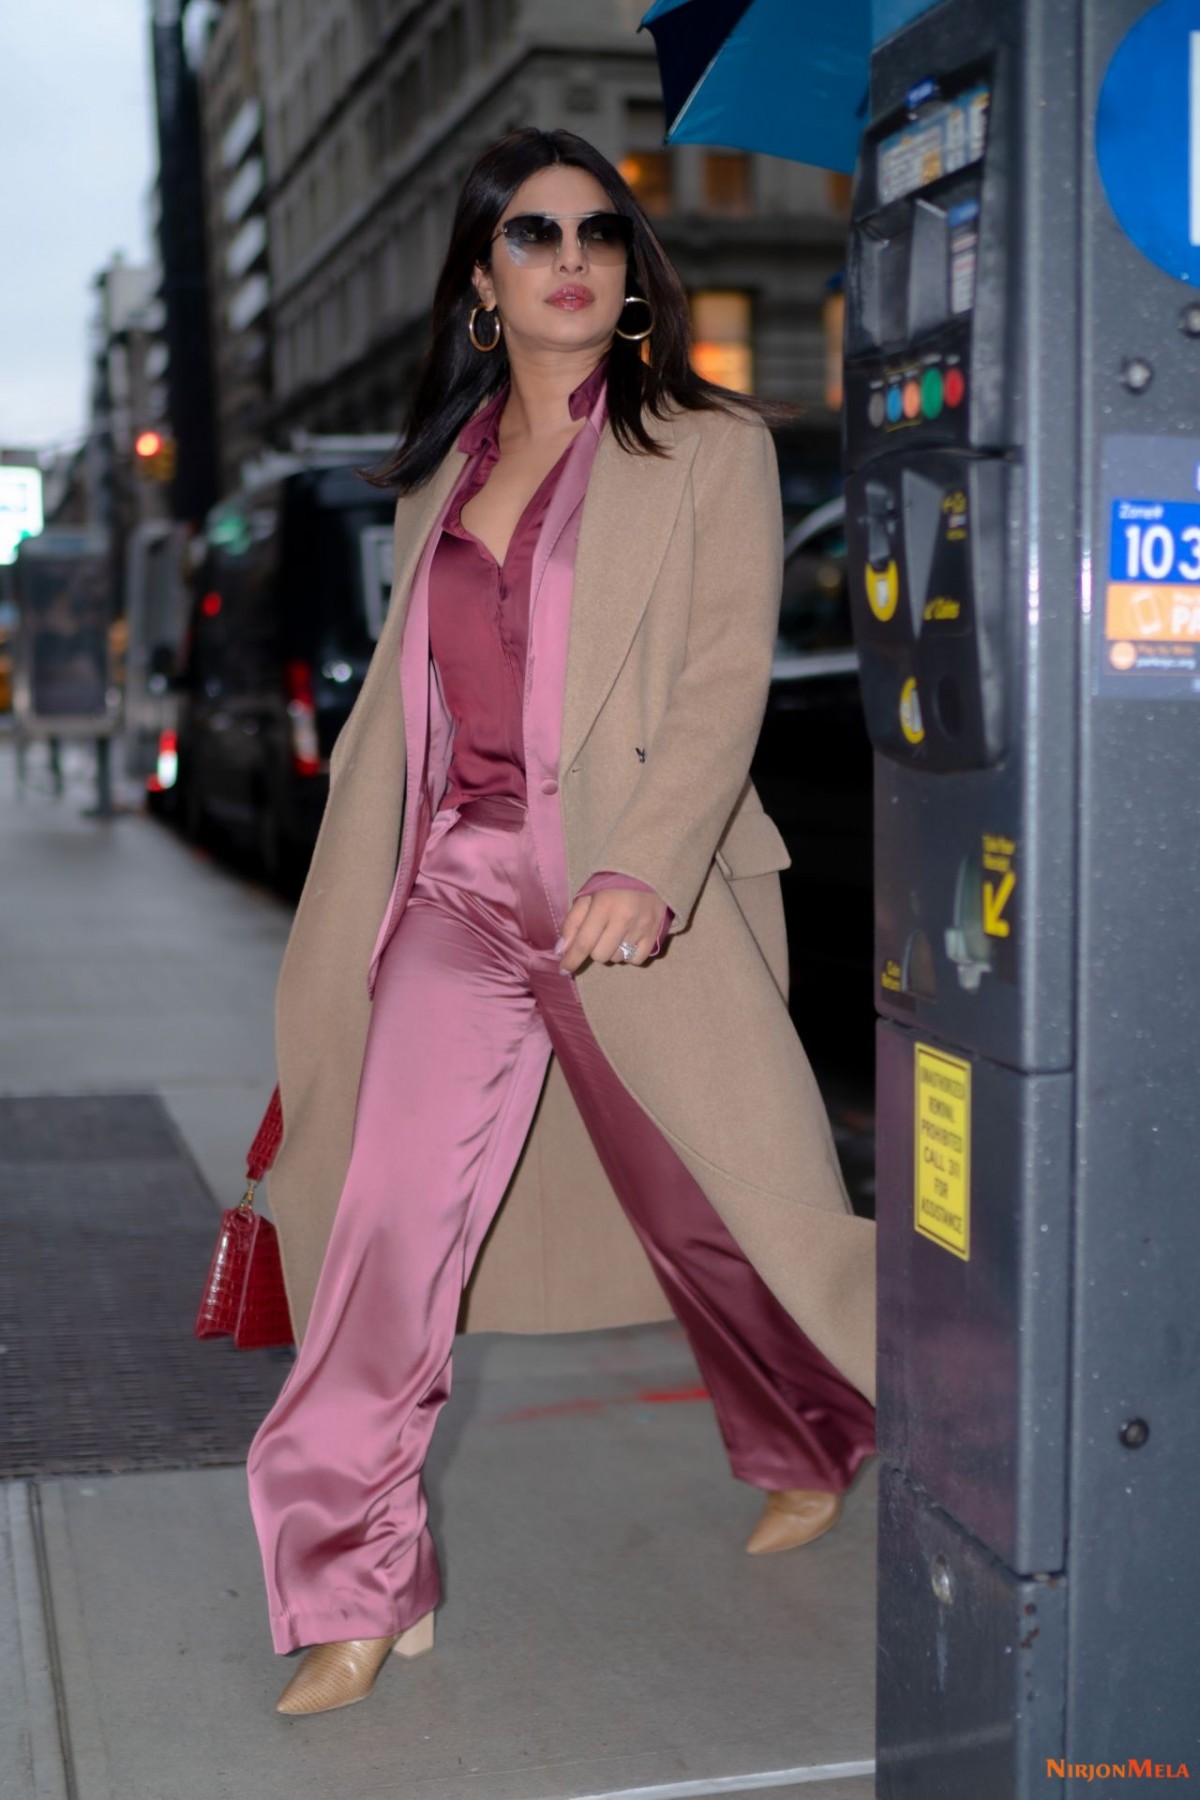 priyanka-chopra-is-stylish-out-in-new-york-12-17-2019-8.jpg